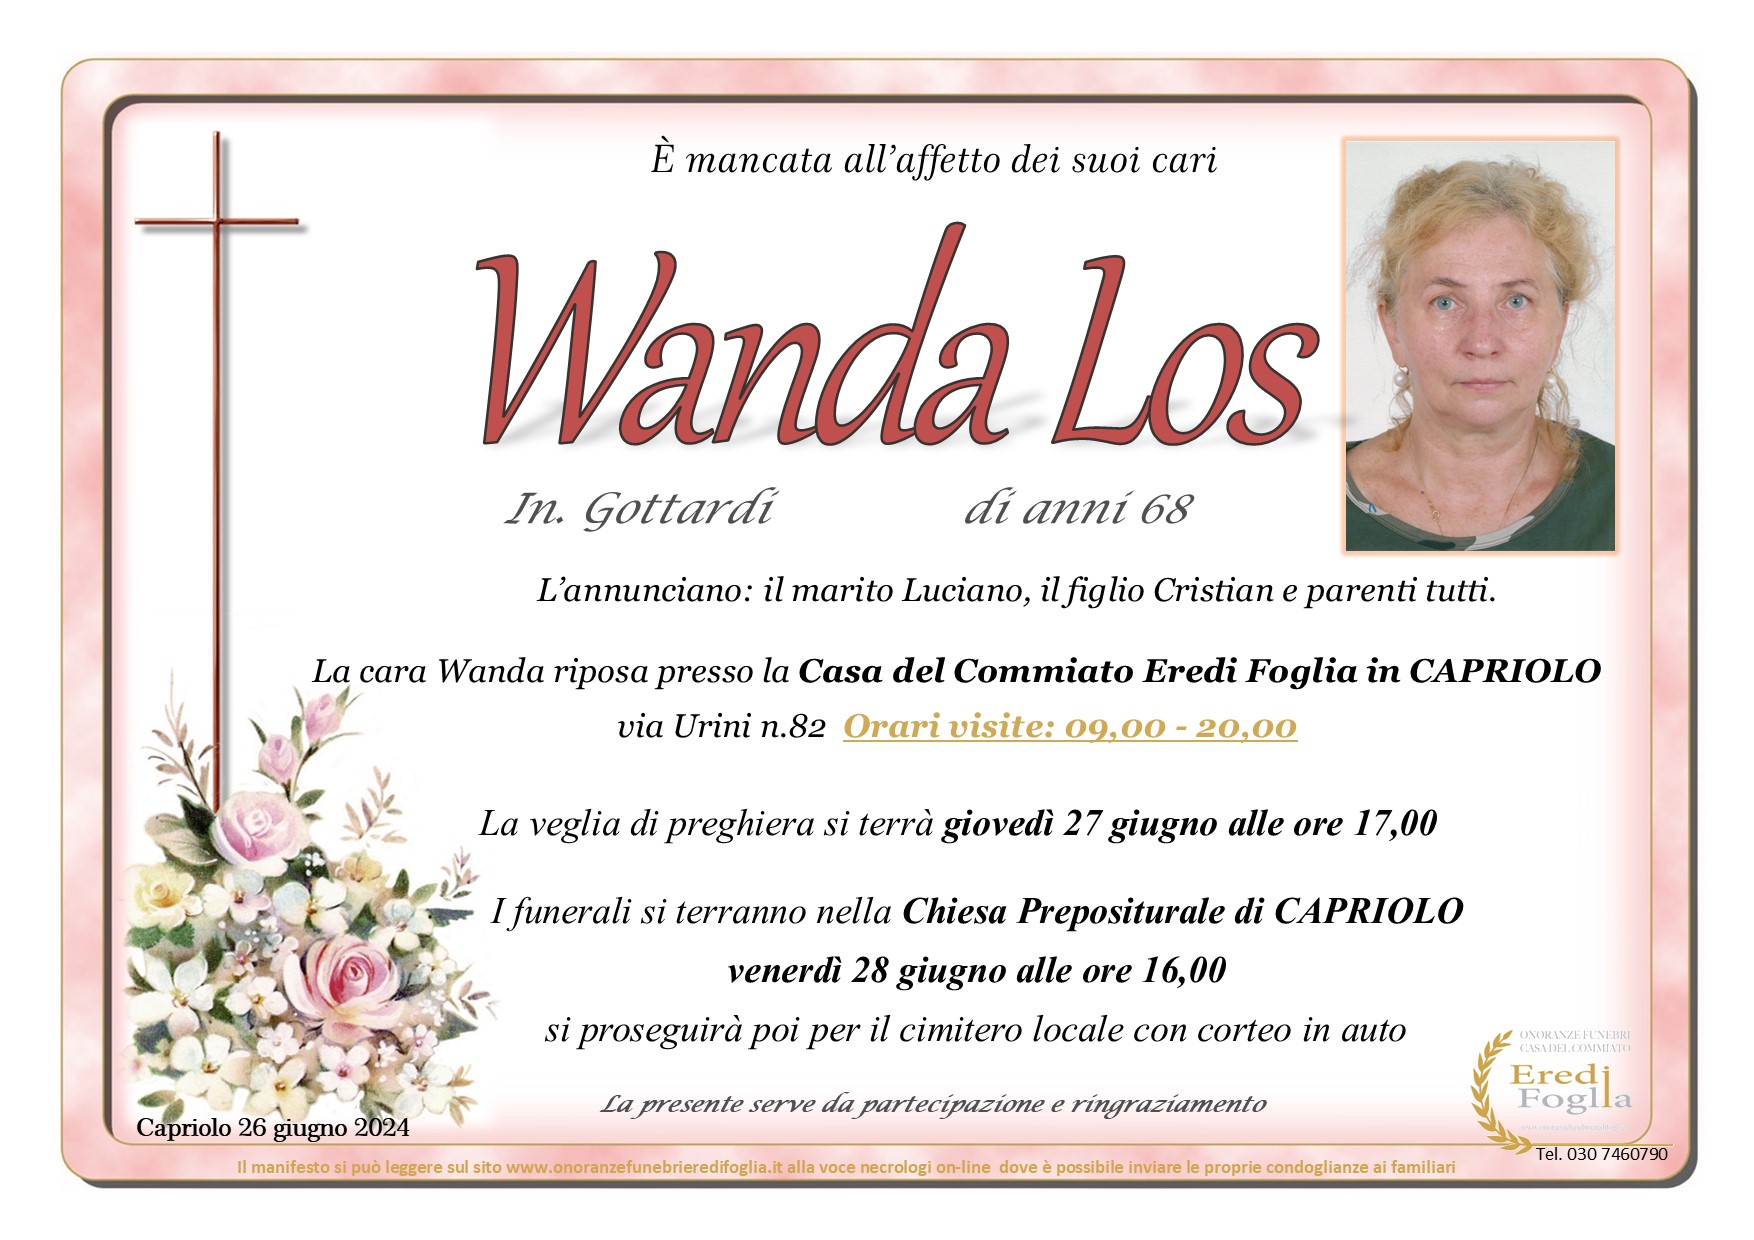 Wanda Los